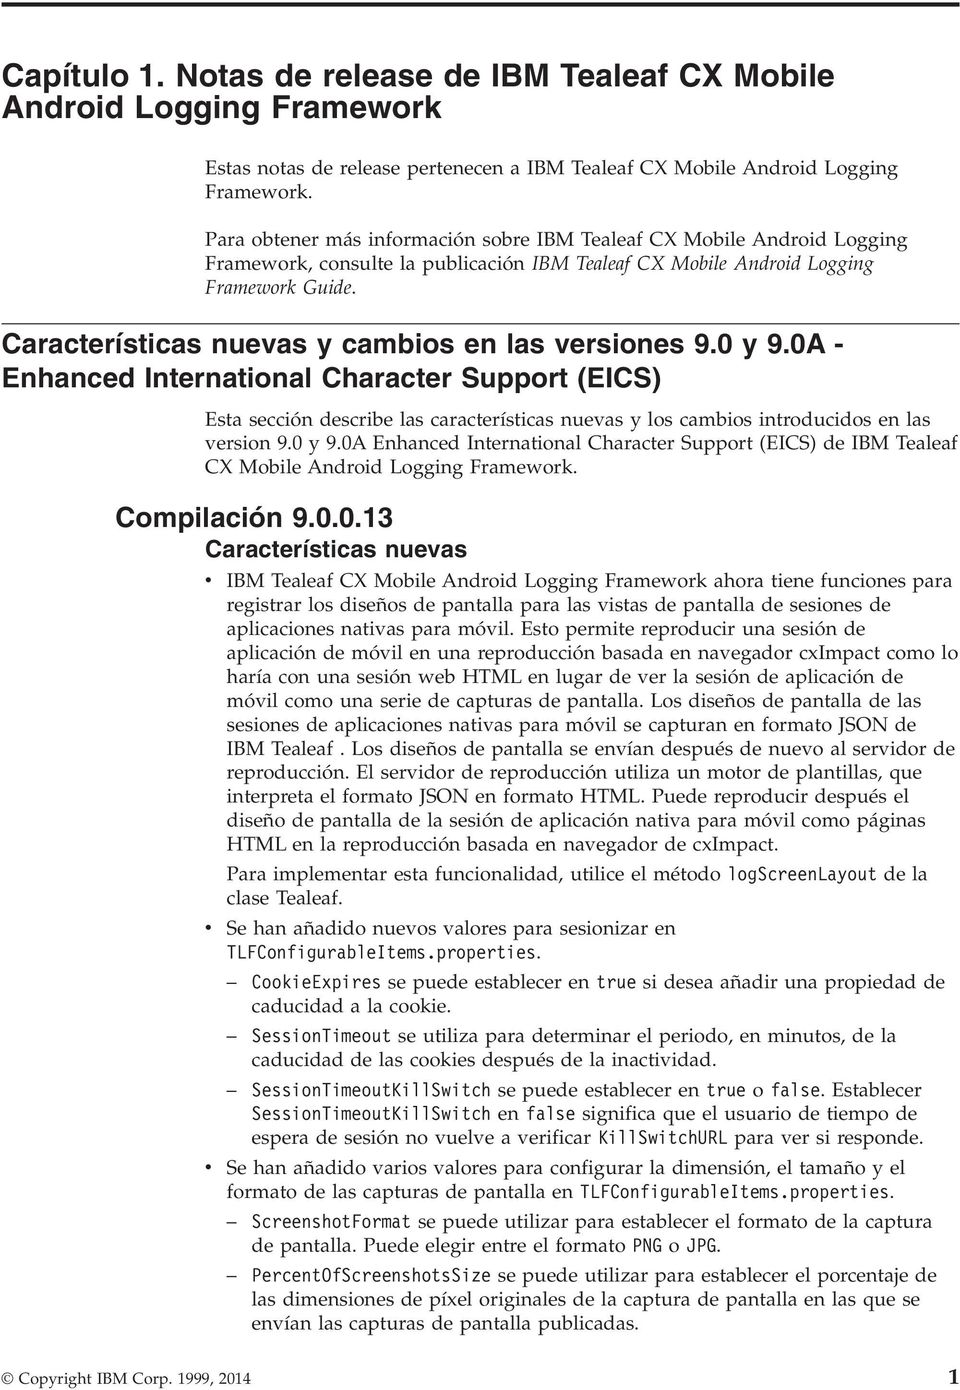 Características nueas y cambios en las ersiones 9.0 y 9.0A - Enhanced International Character Support (EICS) Esta sección describe las características nueas y los cambios introducidos en las ersion 9.